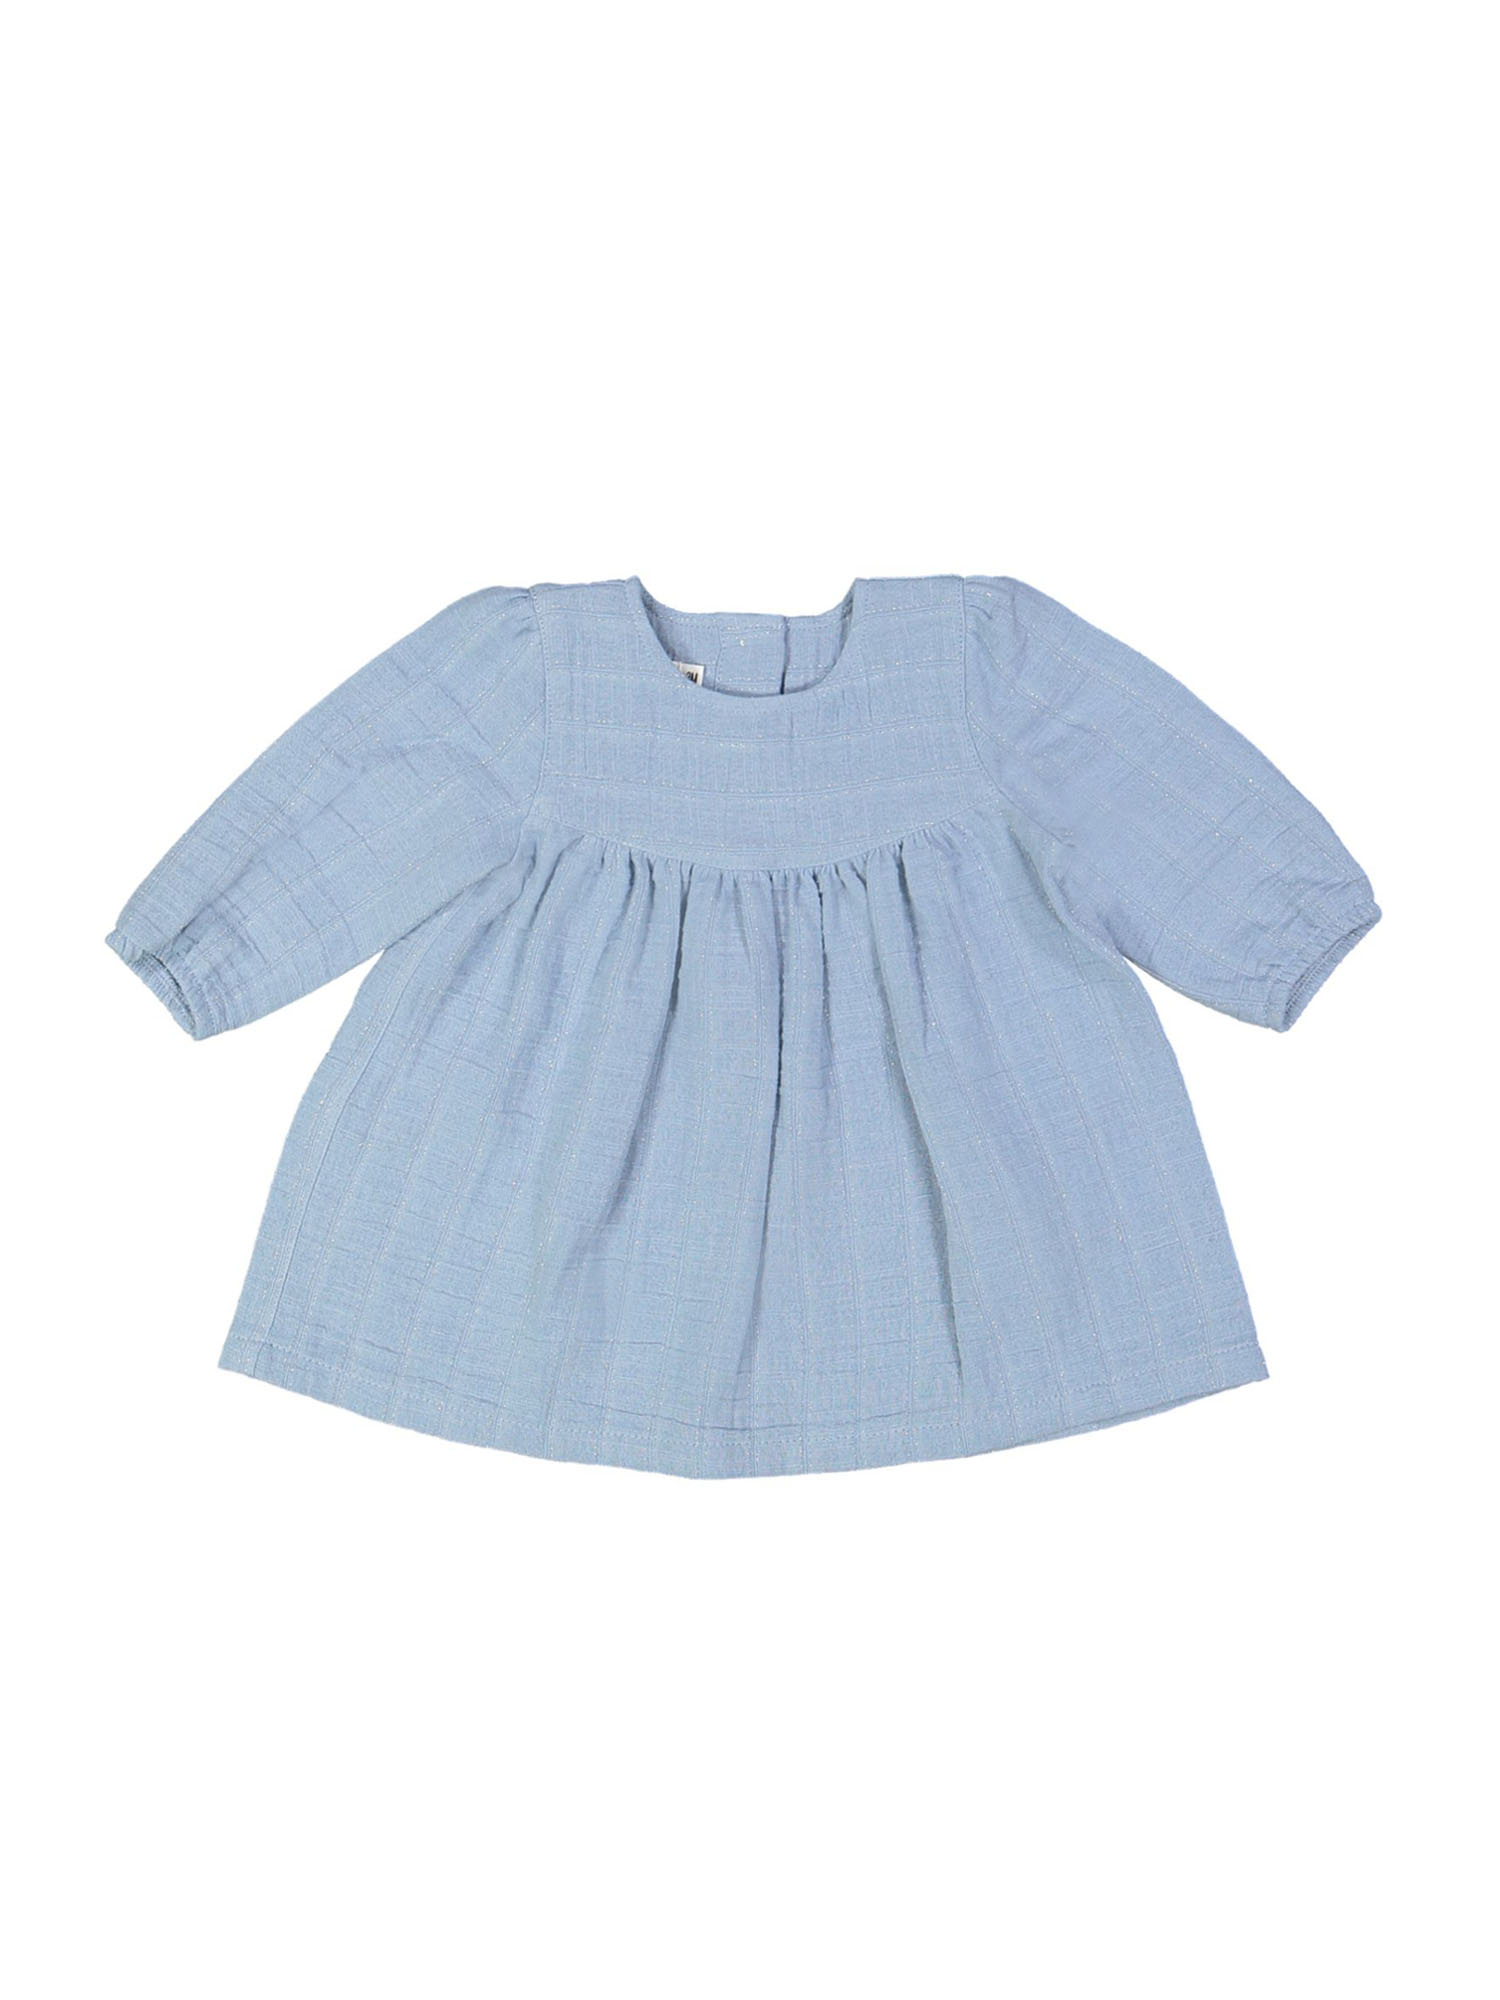 dress mini stripe blue 03m